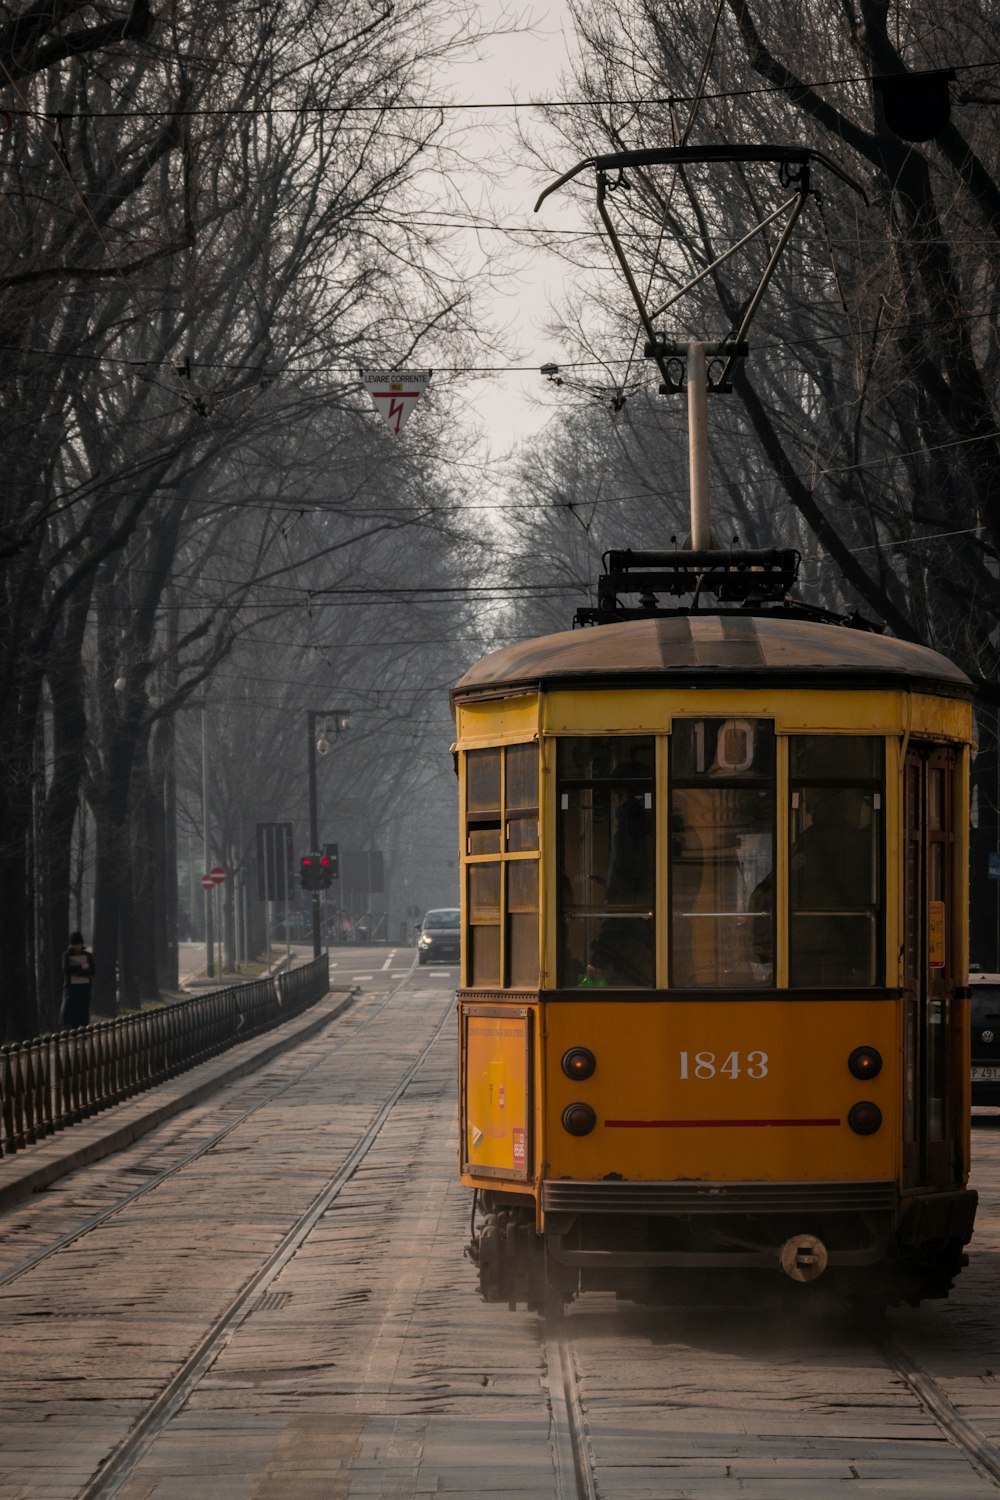 a yellow trolley car on a snowy street